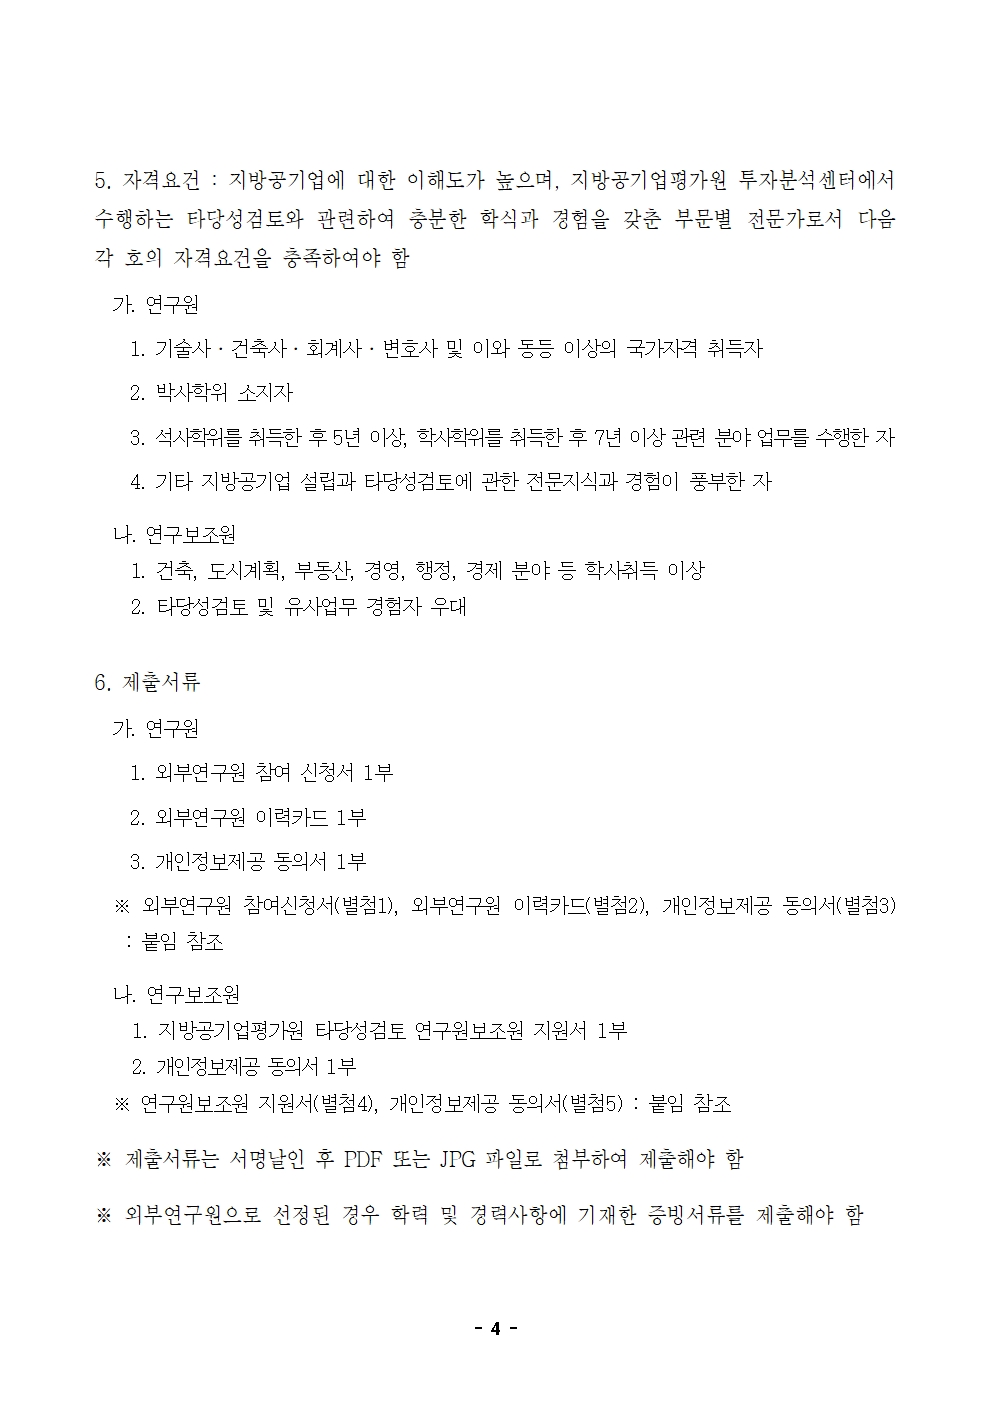 22-9차(10월) 외부연구원 모집 공고_최종004.jpg